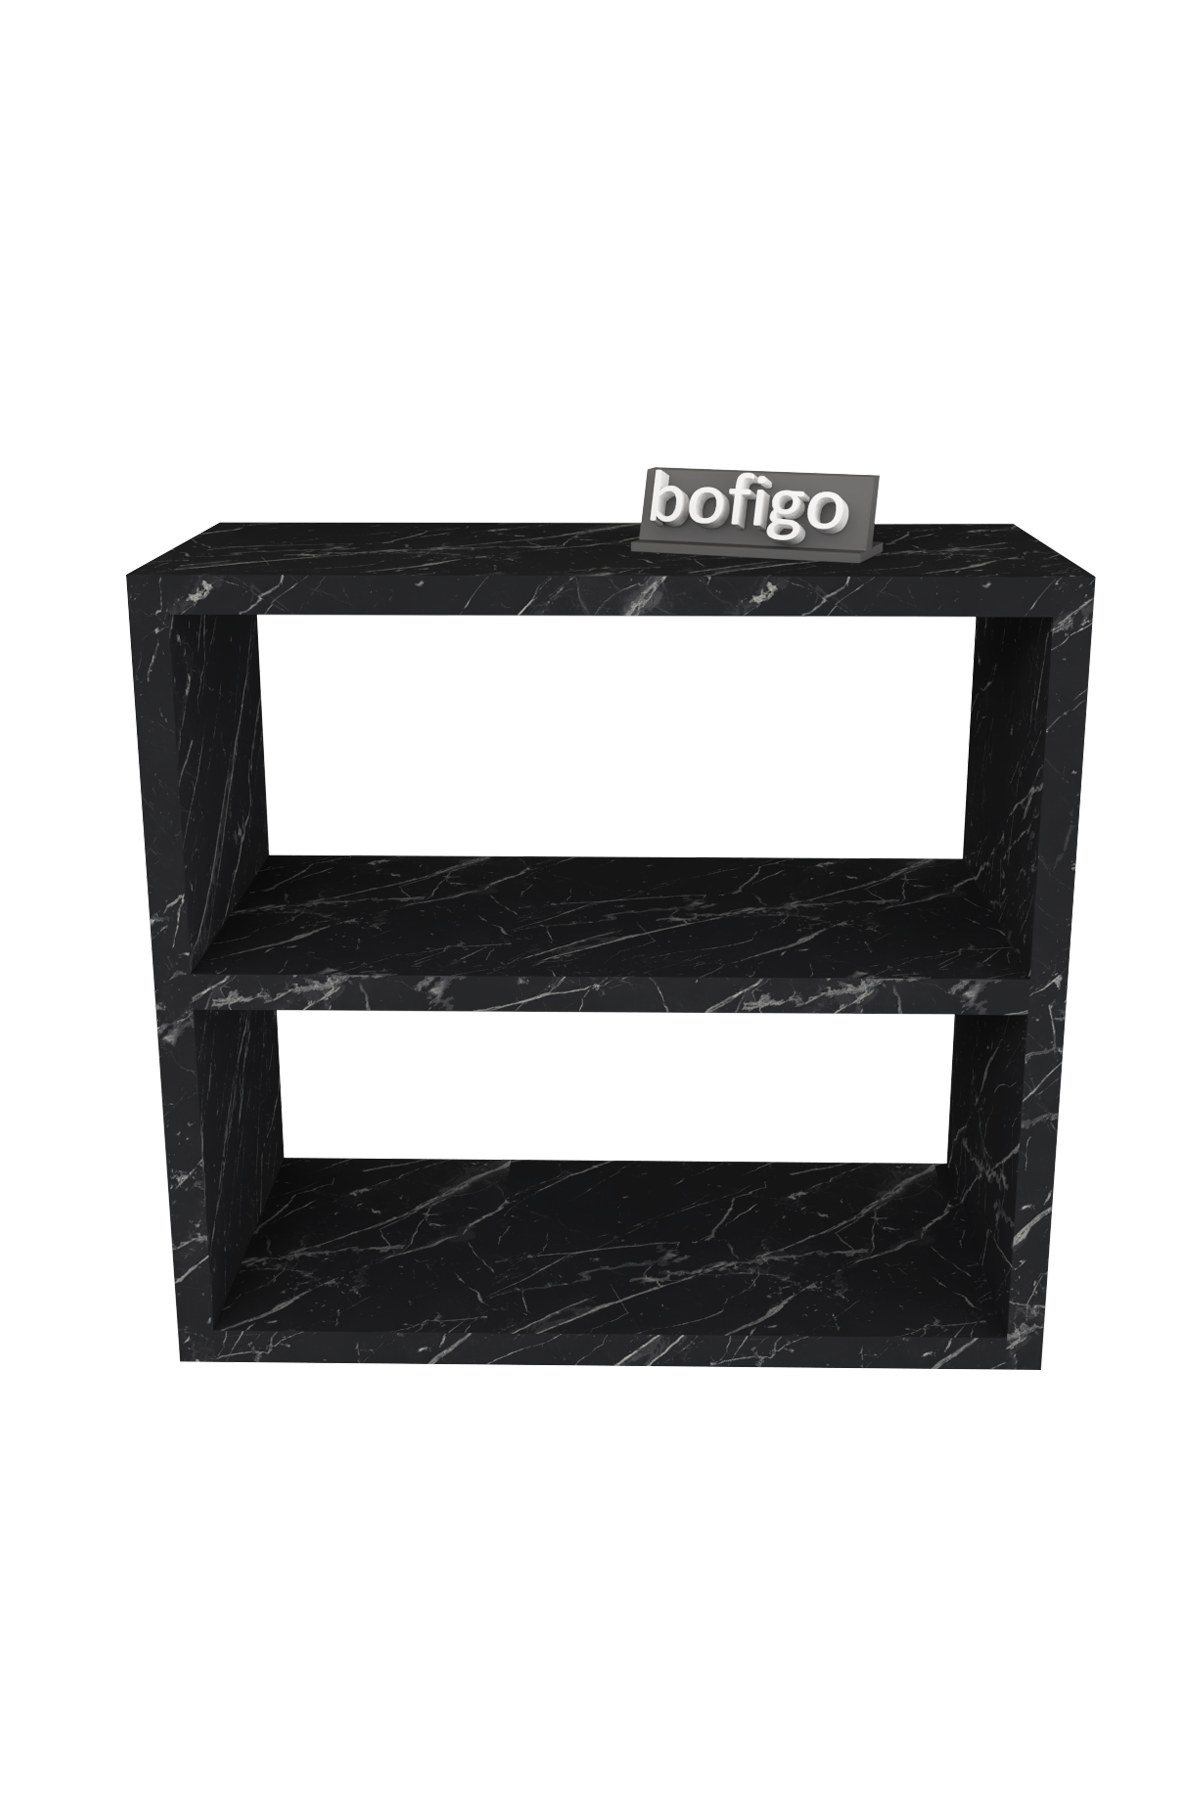 Bofigo Counter Top Shelf Spice Rack Bendir